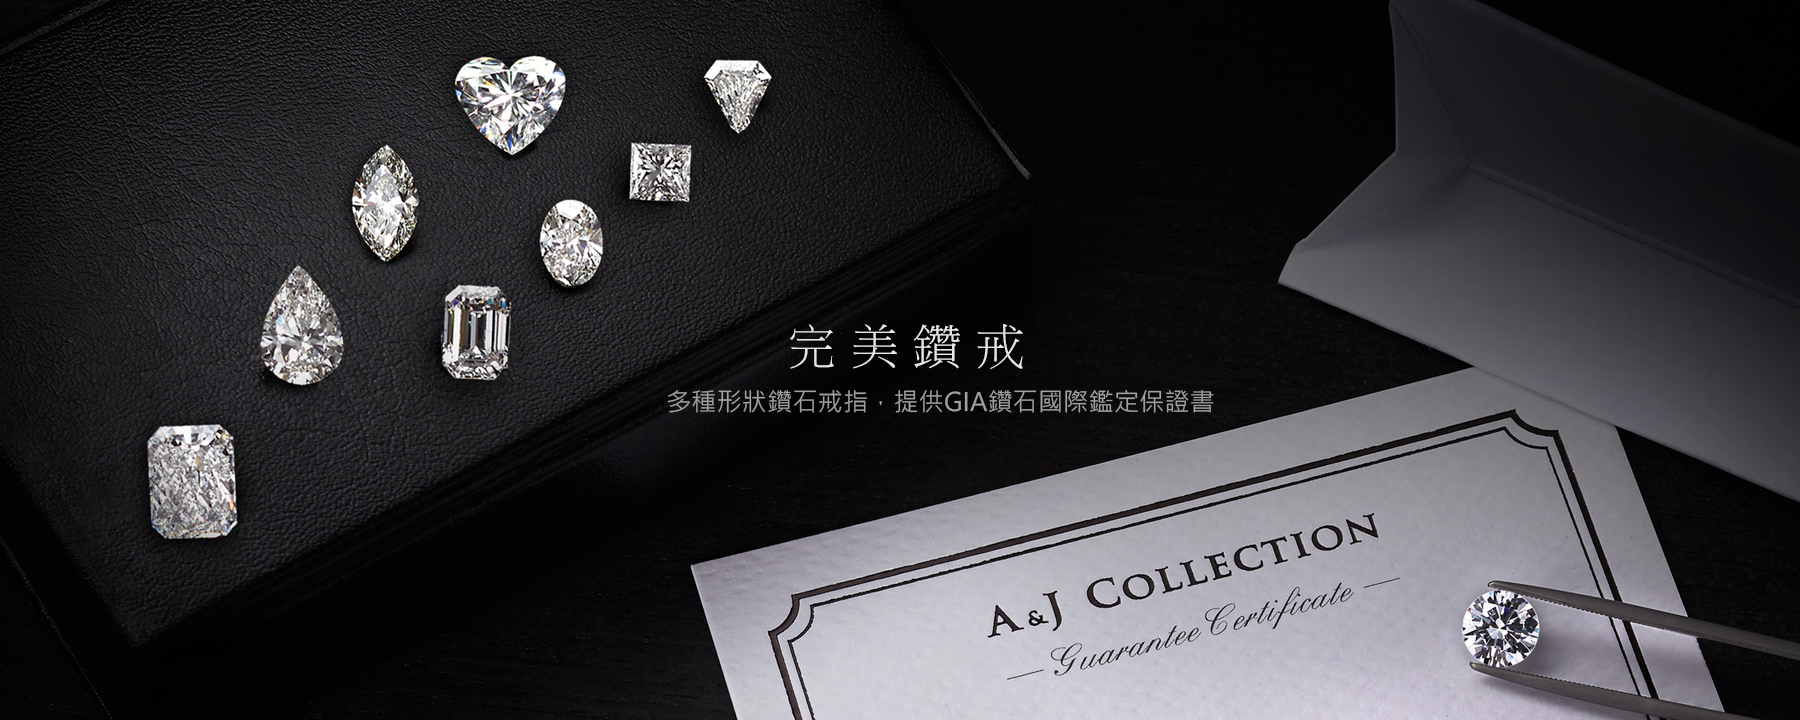 無衝突鑽石婚戒、求婚戒指、提供GIA鑽石國際鑑定保證書